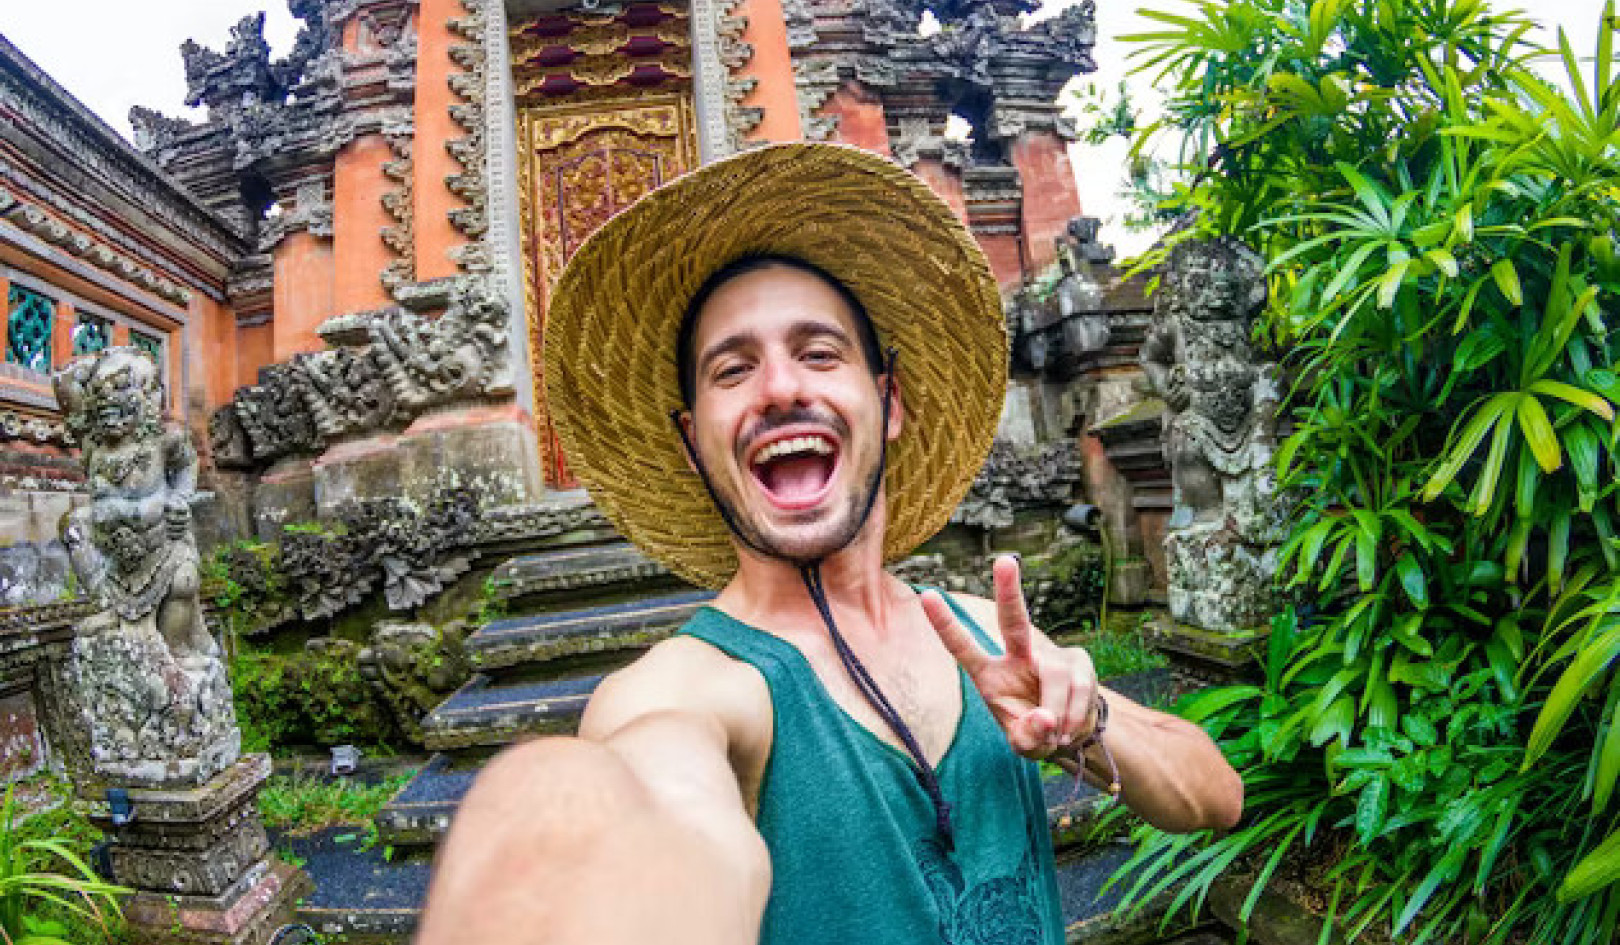 Instagrams indvirkning på turistadfærd: Sådan rejser du med respekt